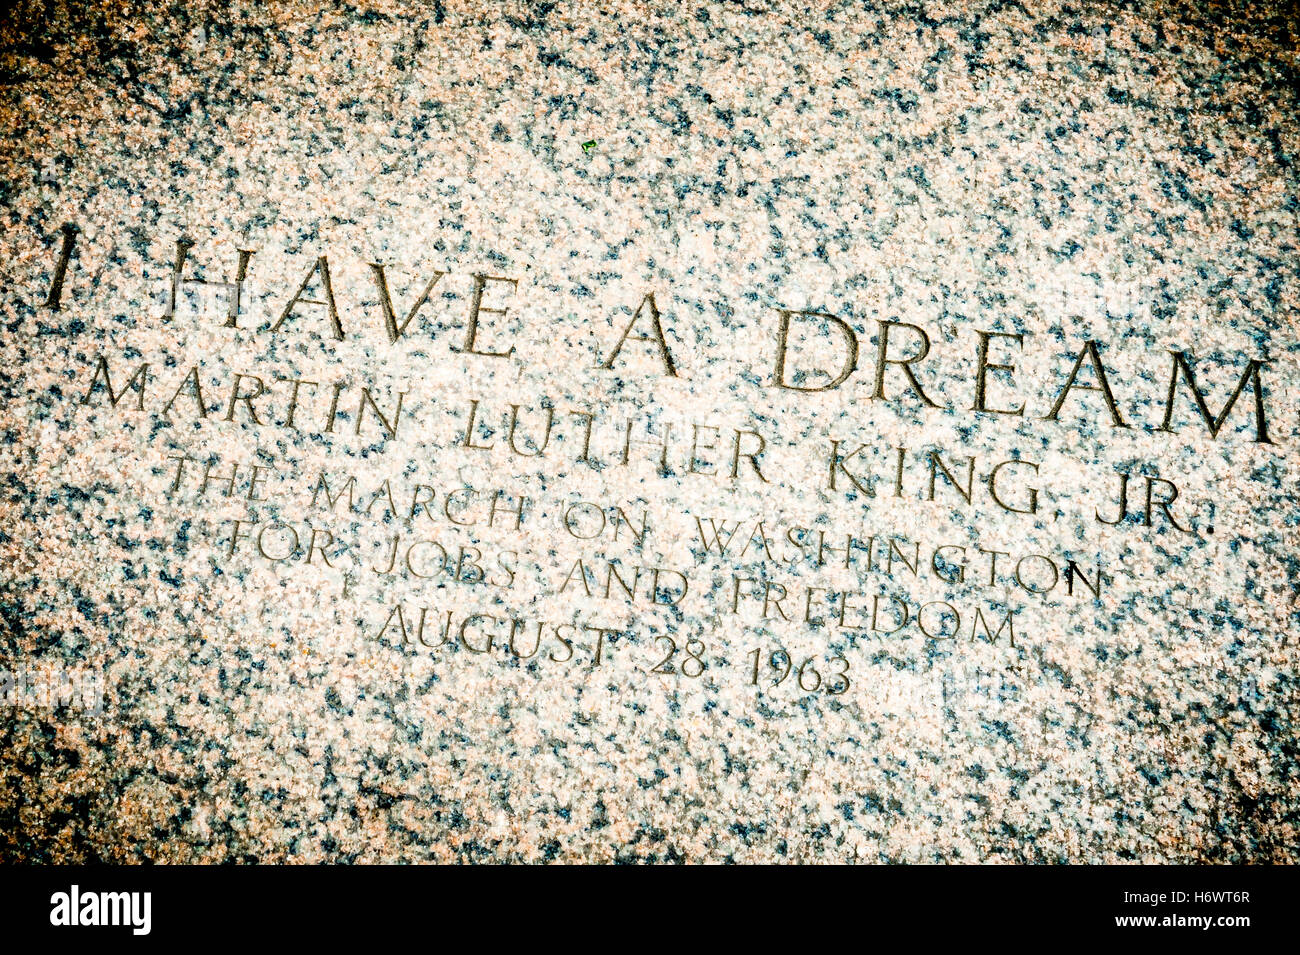 WASHINGTON DC - 30 juillet 2014 : 'J'ai un rêve' citation sur les marches du Lincoln Memorial Commémoration Martin Luther King Jr. Banque D'Images